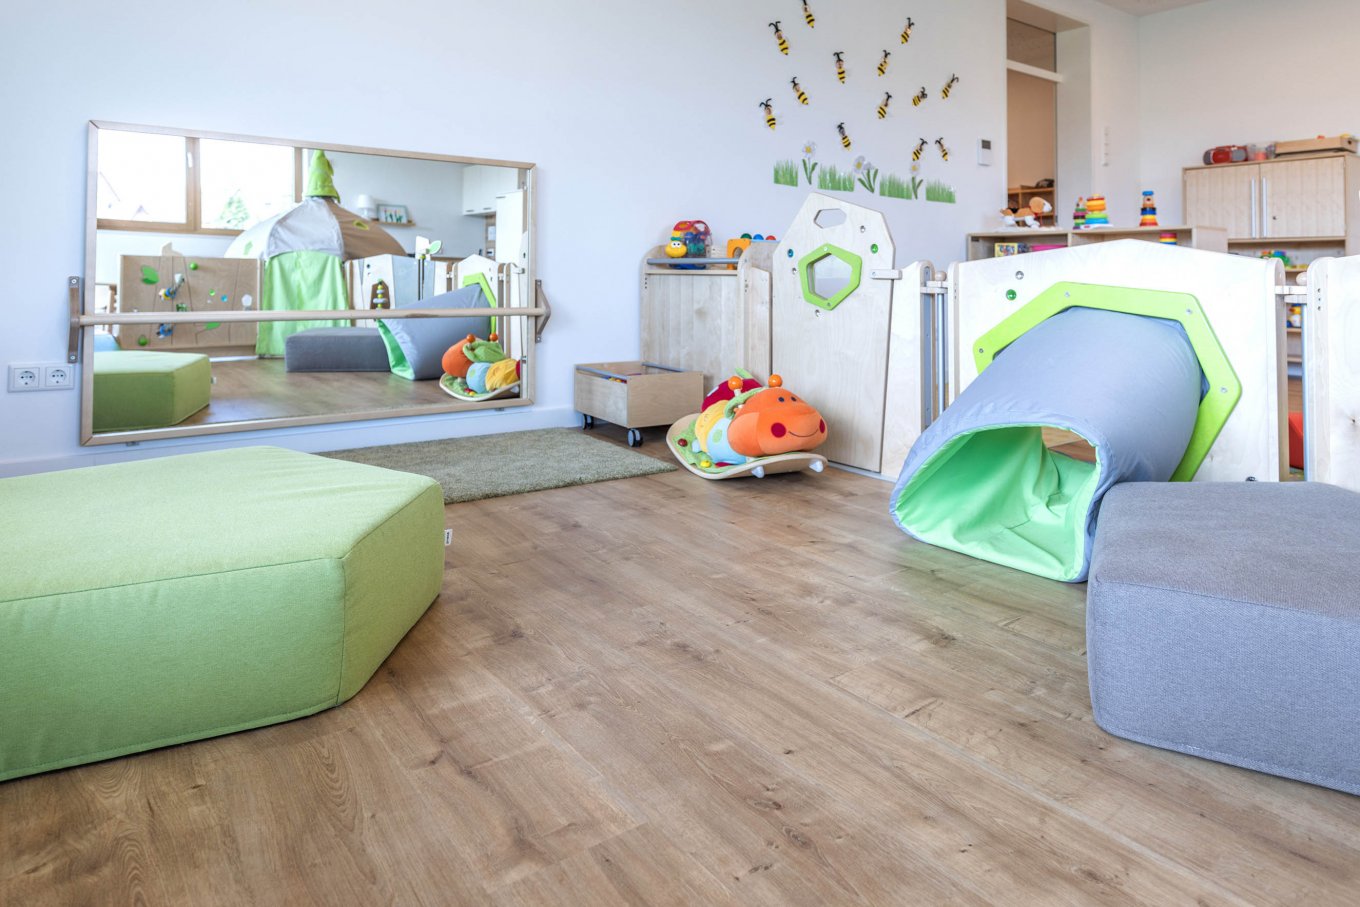 wineo PURLINE Bioboden im Kindergarten Fußboden Holzoptik Bodenbelag Kita moderne Einrichtung Spielzeug Rutsche Teppich